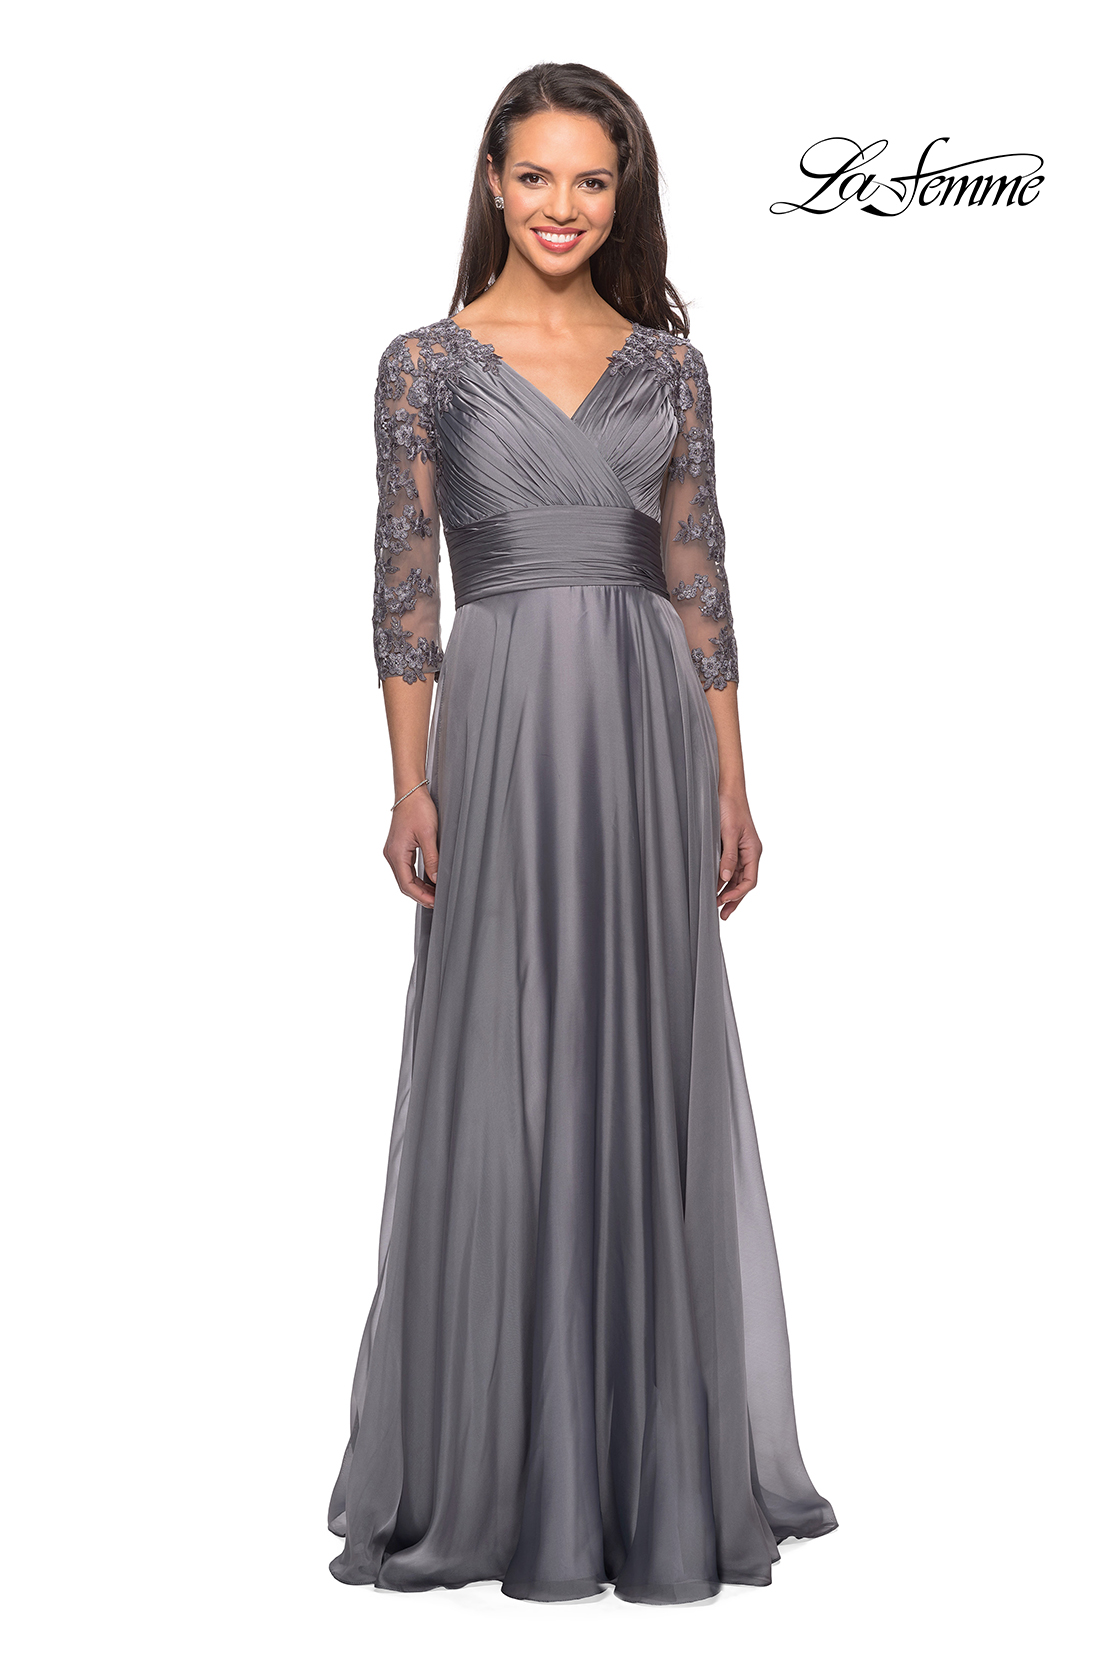 La Femme Mother of the Bride Dress Style #27153 | La Femme